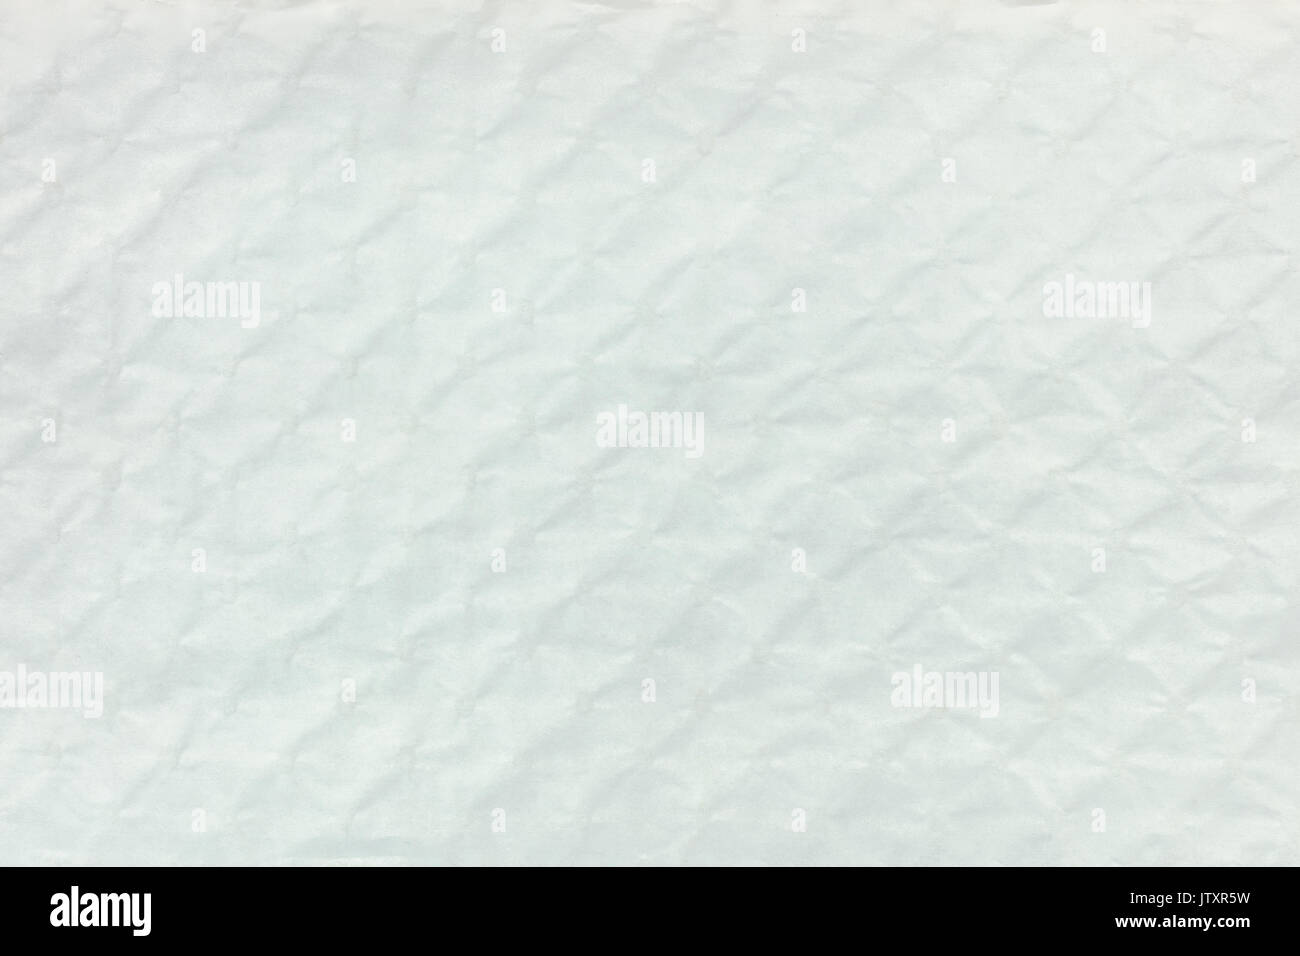 Zusammenfassung Hintergrund weiße strukturierte holprigen Karton mit rhombus Muster Stockfoto